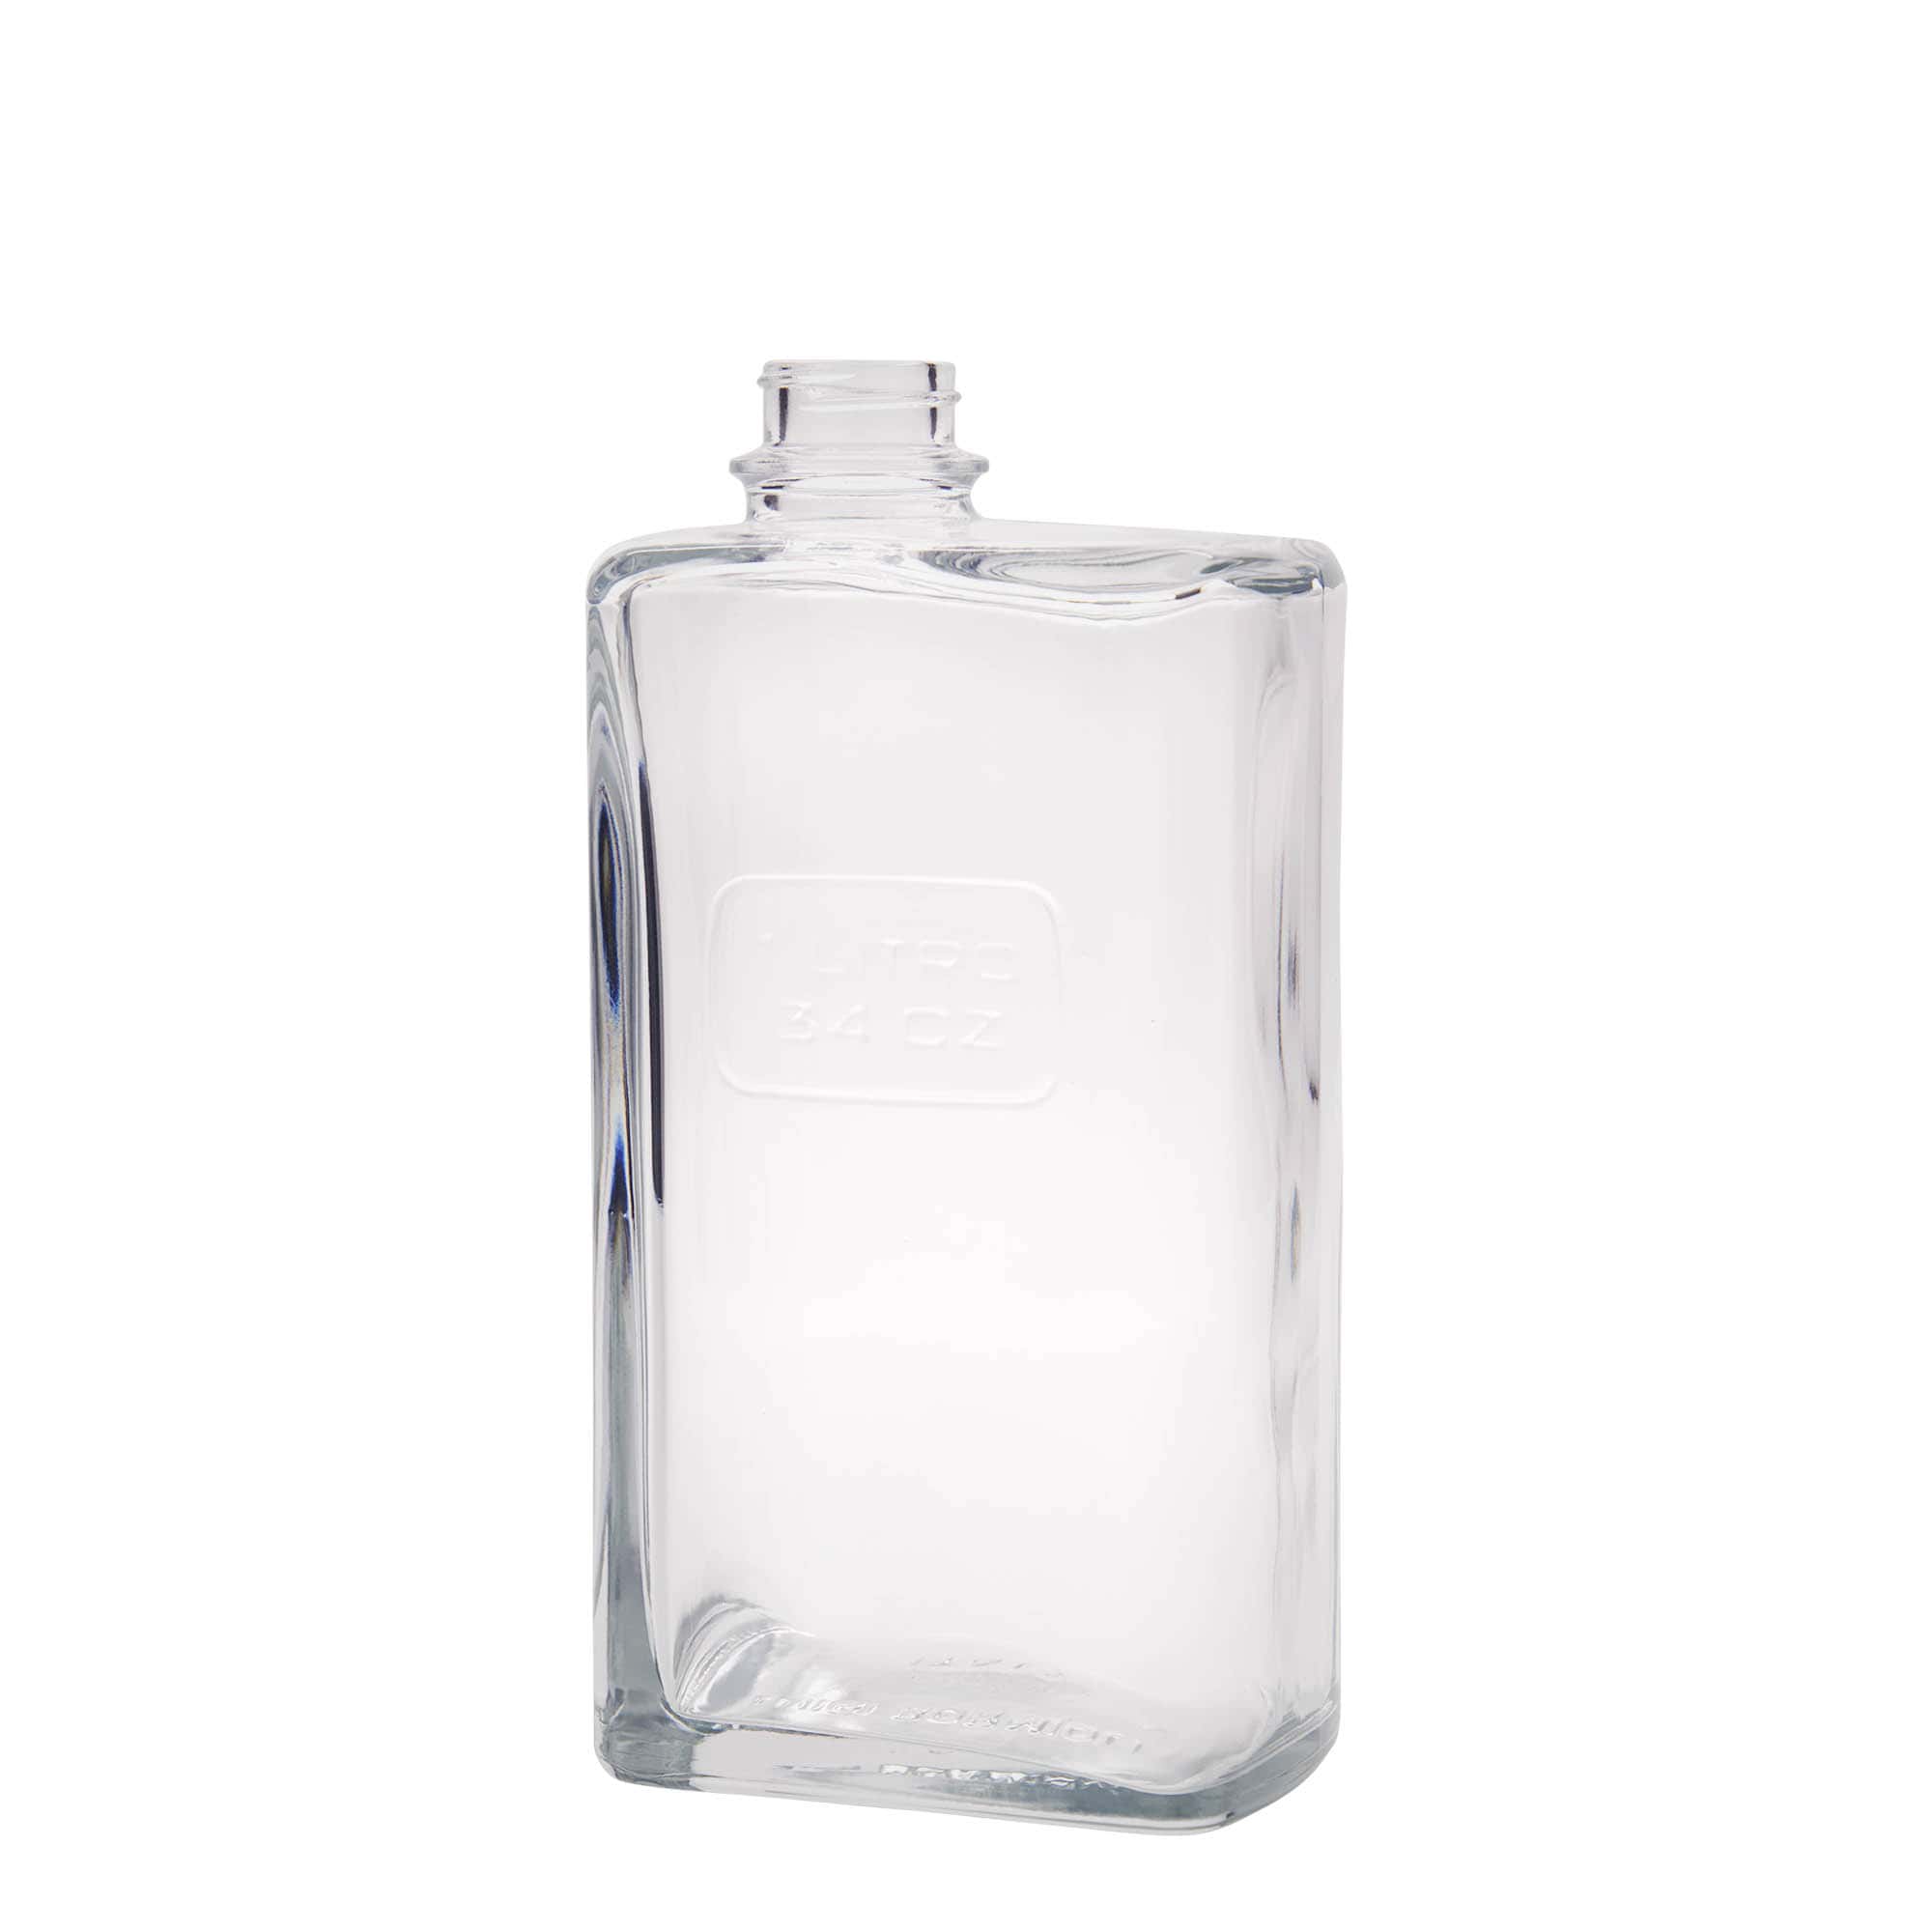 1,000 ml glass bottle 'Optima Lattina', rectangular, closure: screw cap